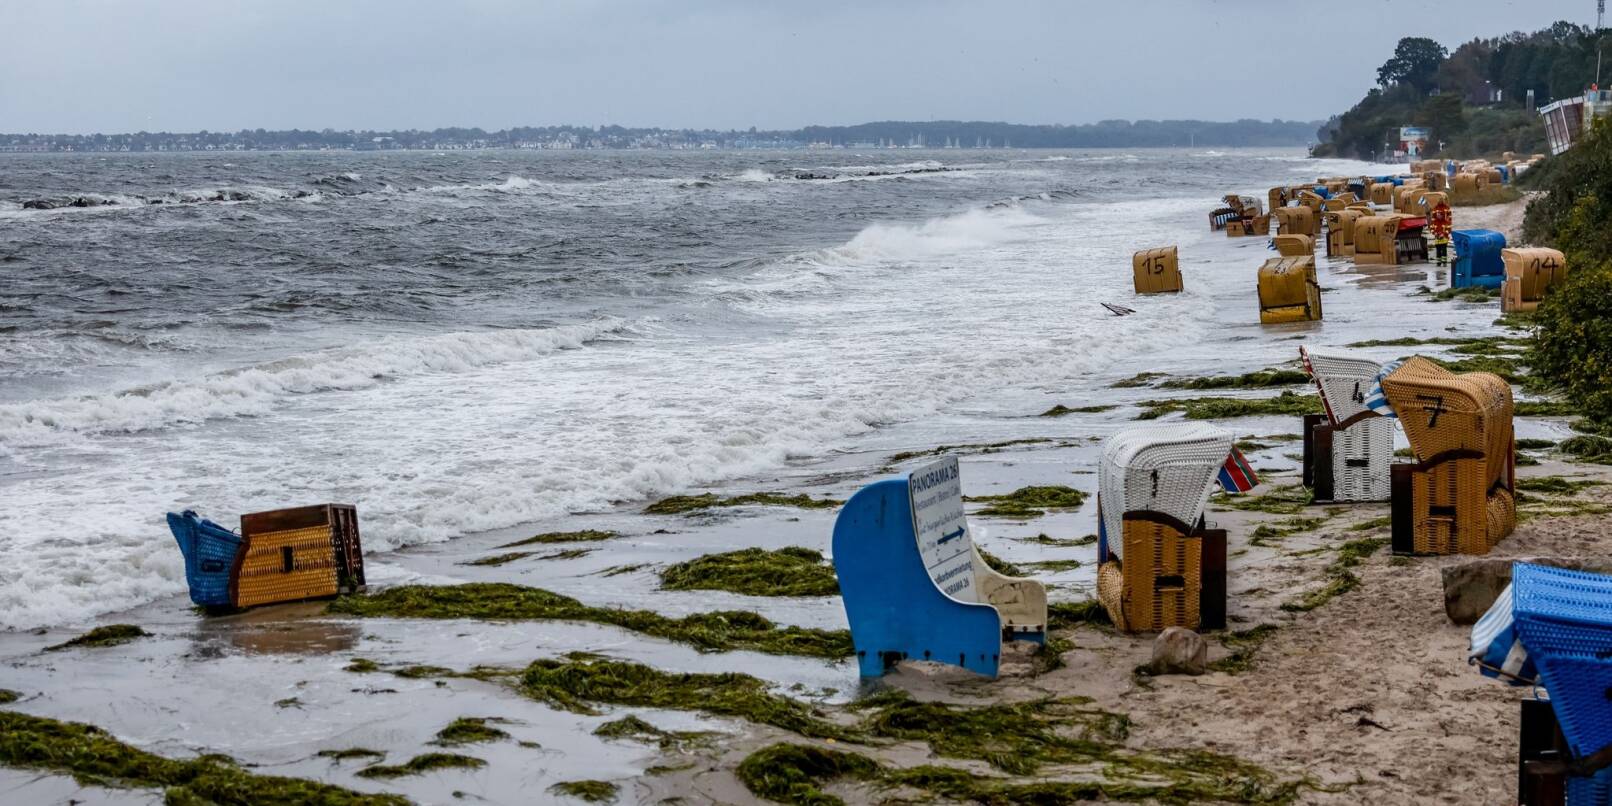 An der Ostseeküste in der Kieler und Lübecker Bucht wird schwere Sturmflut erwartet. Für einige dieser Strankörbe kommt jede Hilfe zu spät.